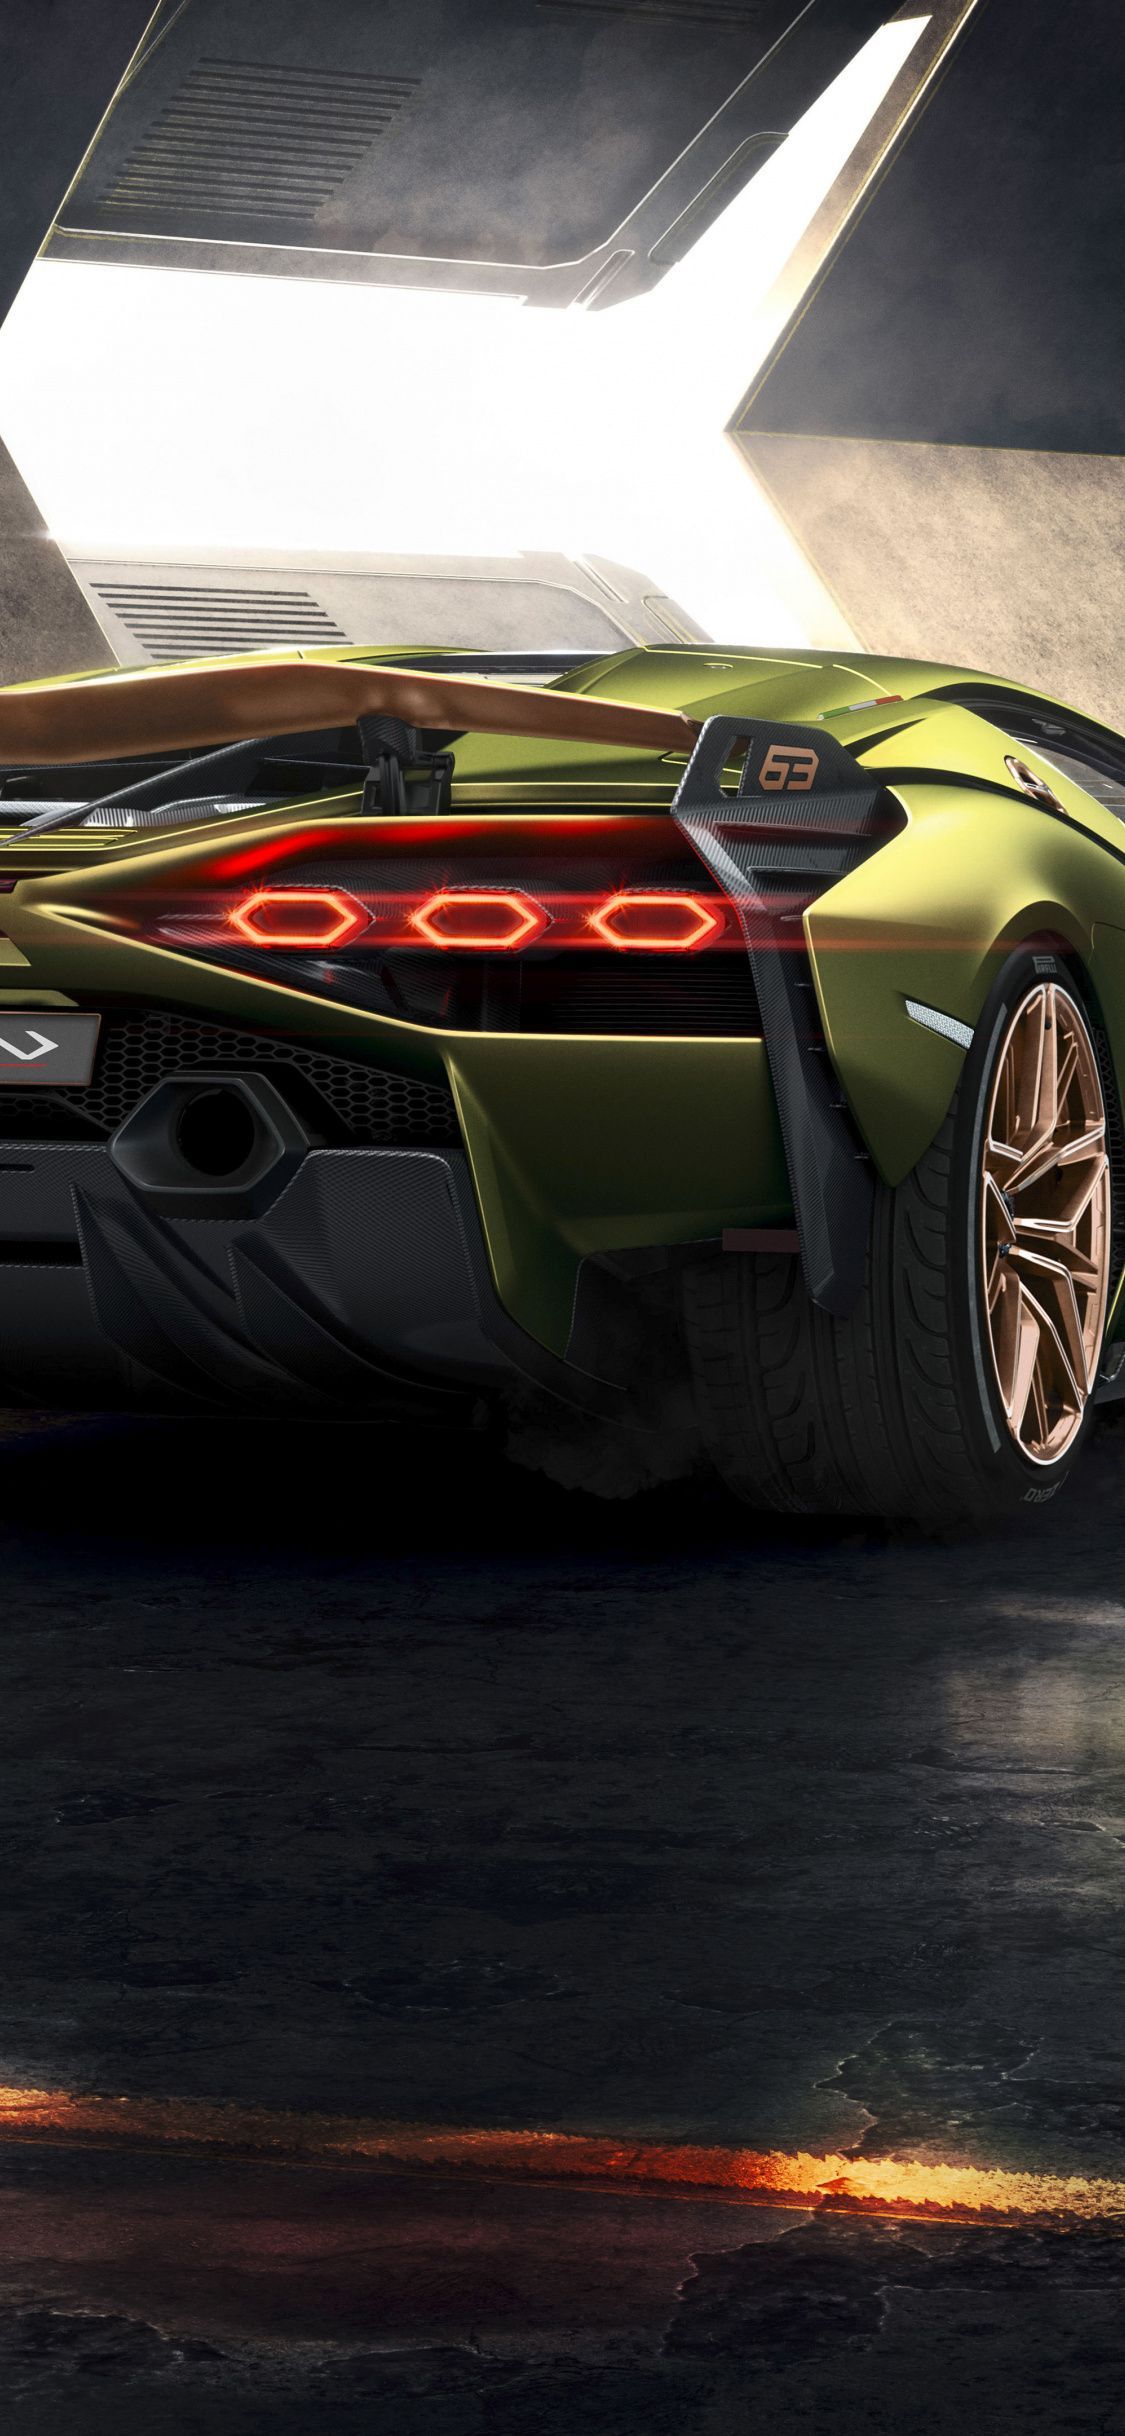 Lamborghini Sian, 2019 car, rear view wallpaper